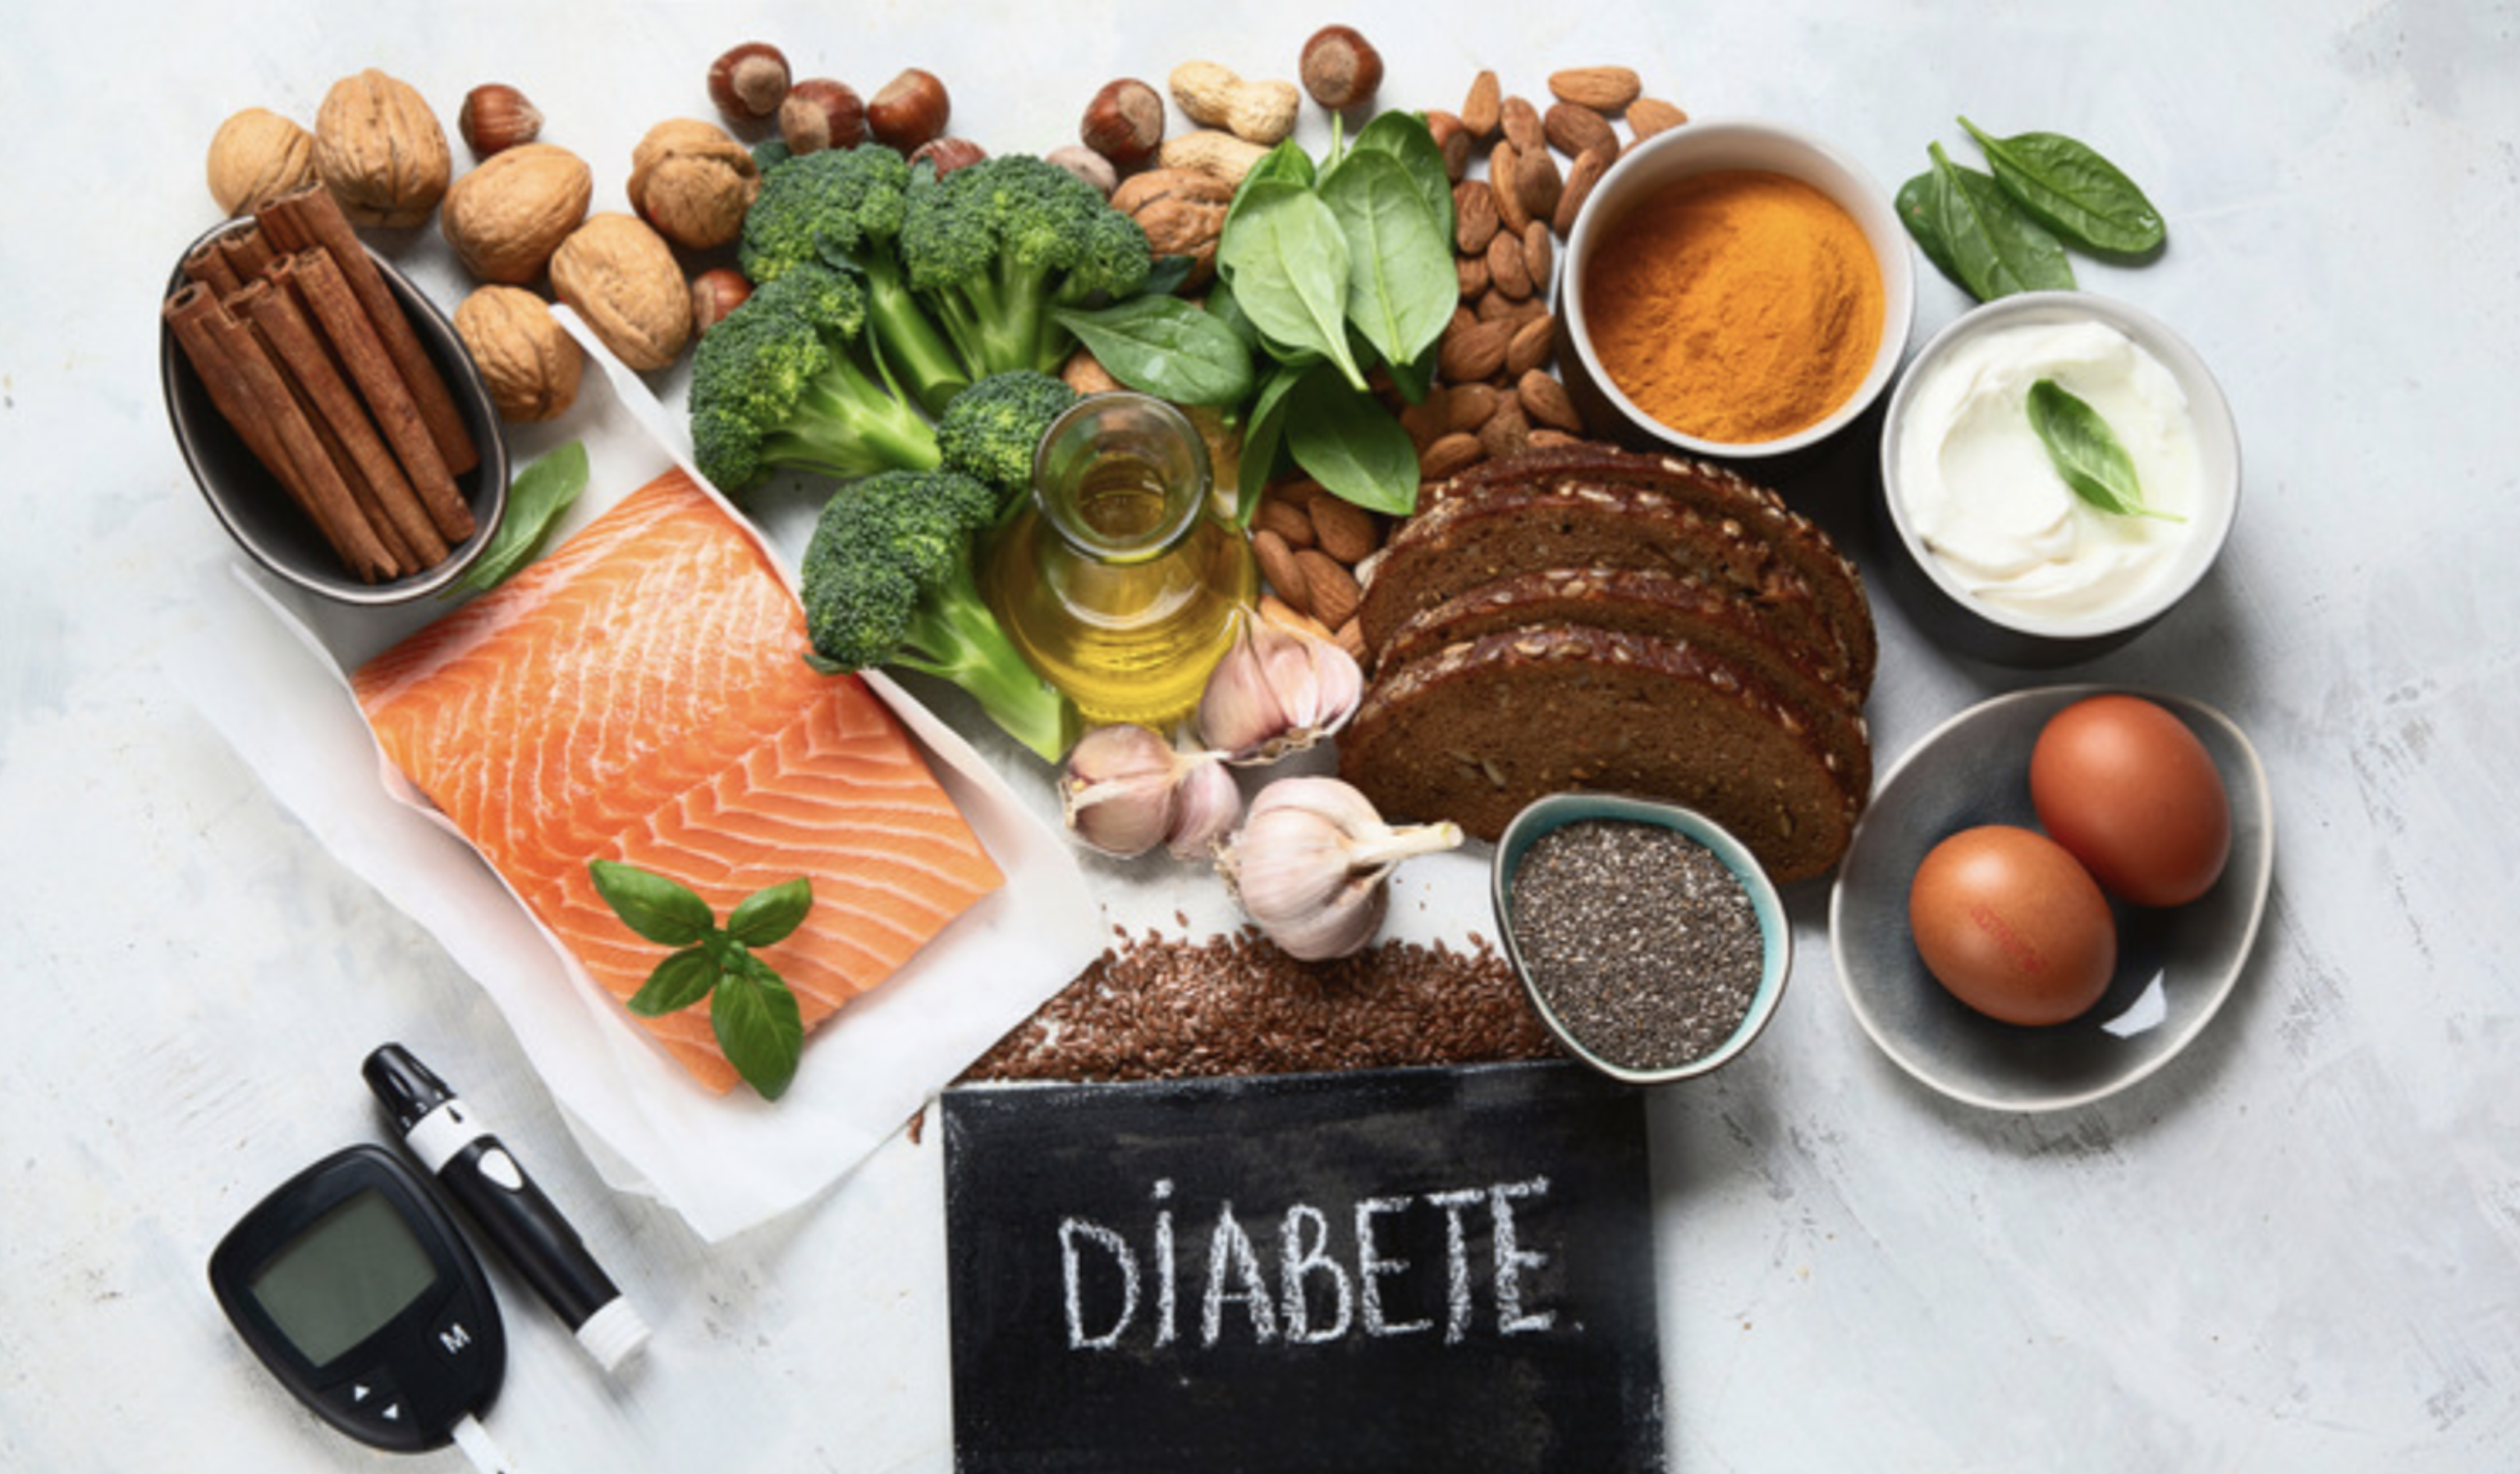 Peut-on prévenir le diabète? La progression du prédiabète en diabète de type 2 par l'alimentation?